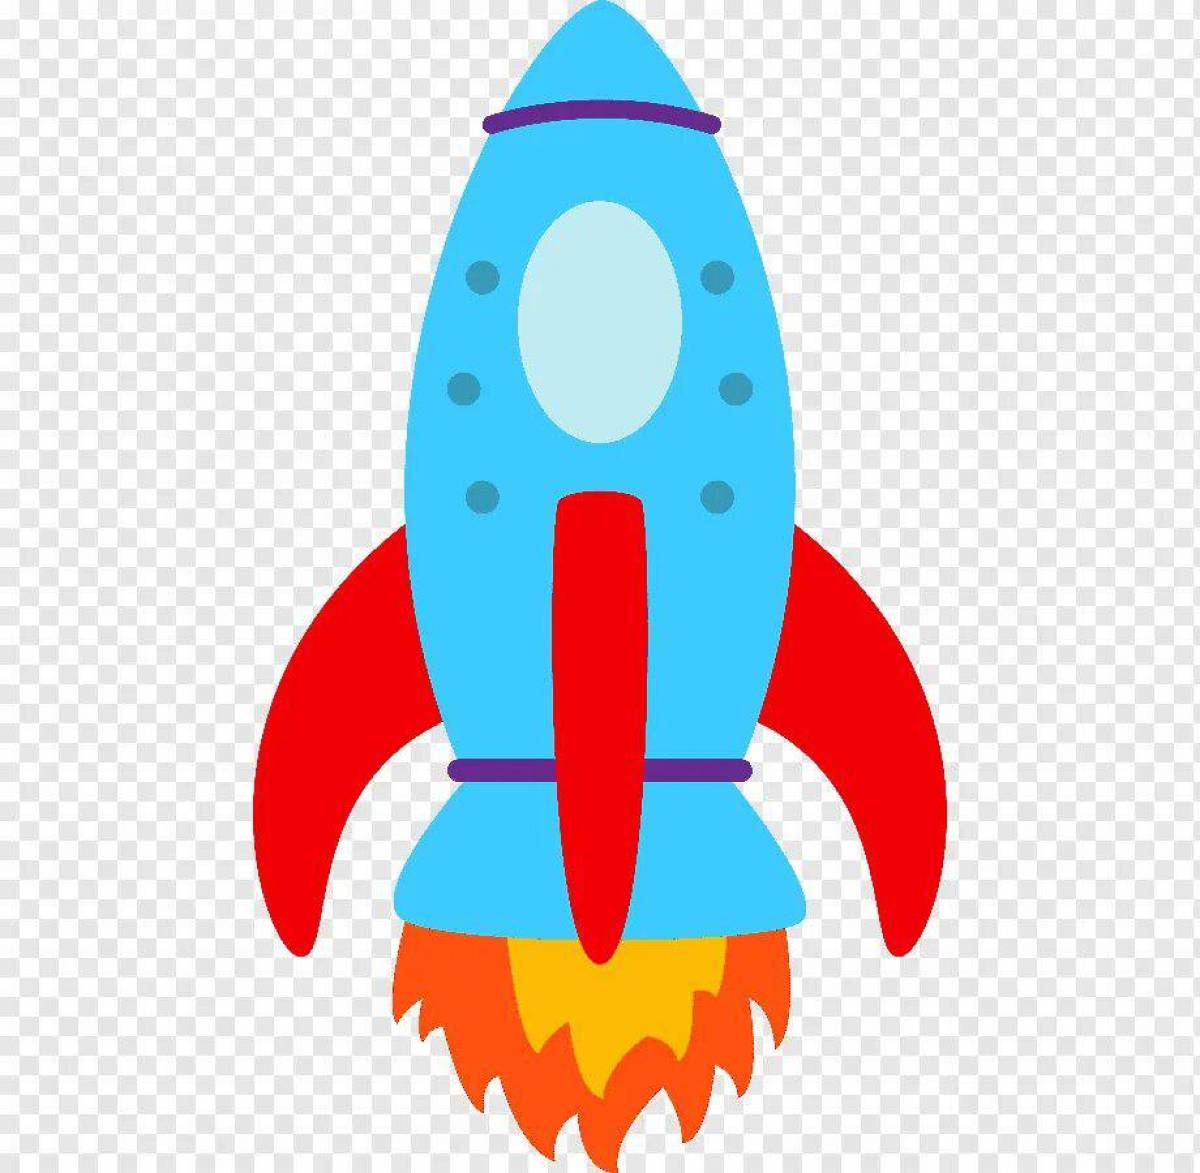 Ракета для детей. Изображение ракеты для детей. Цветная ракета для детей. Космическая ракета для детей. Картинка ракеты для детей цветная